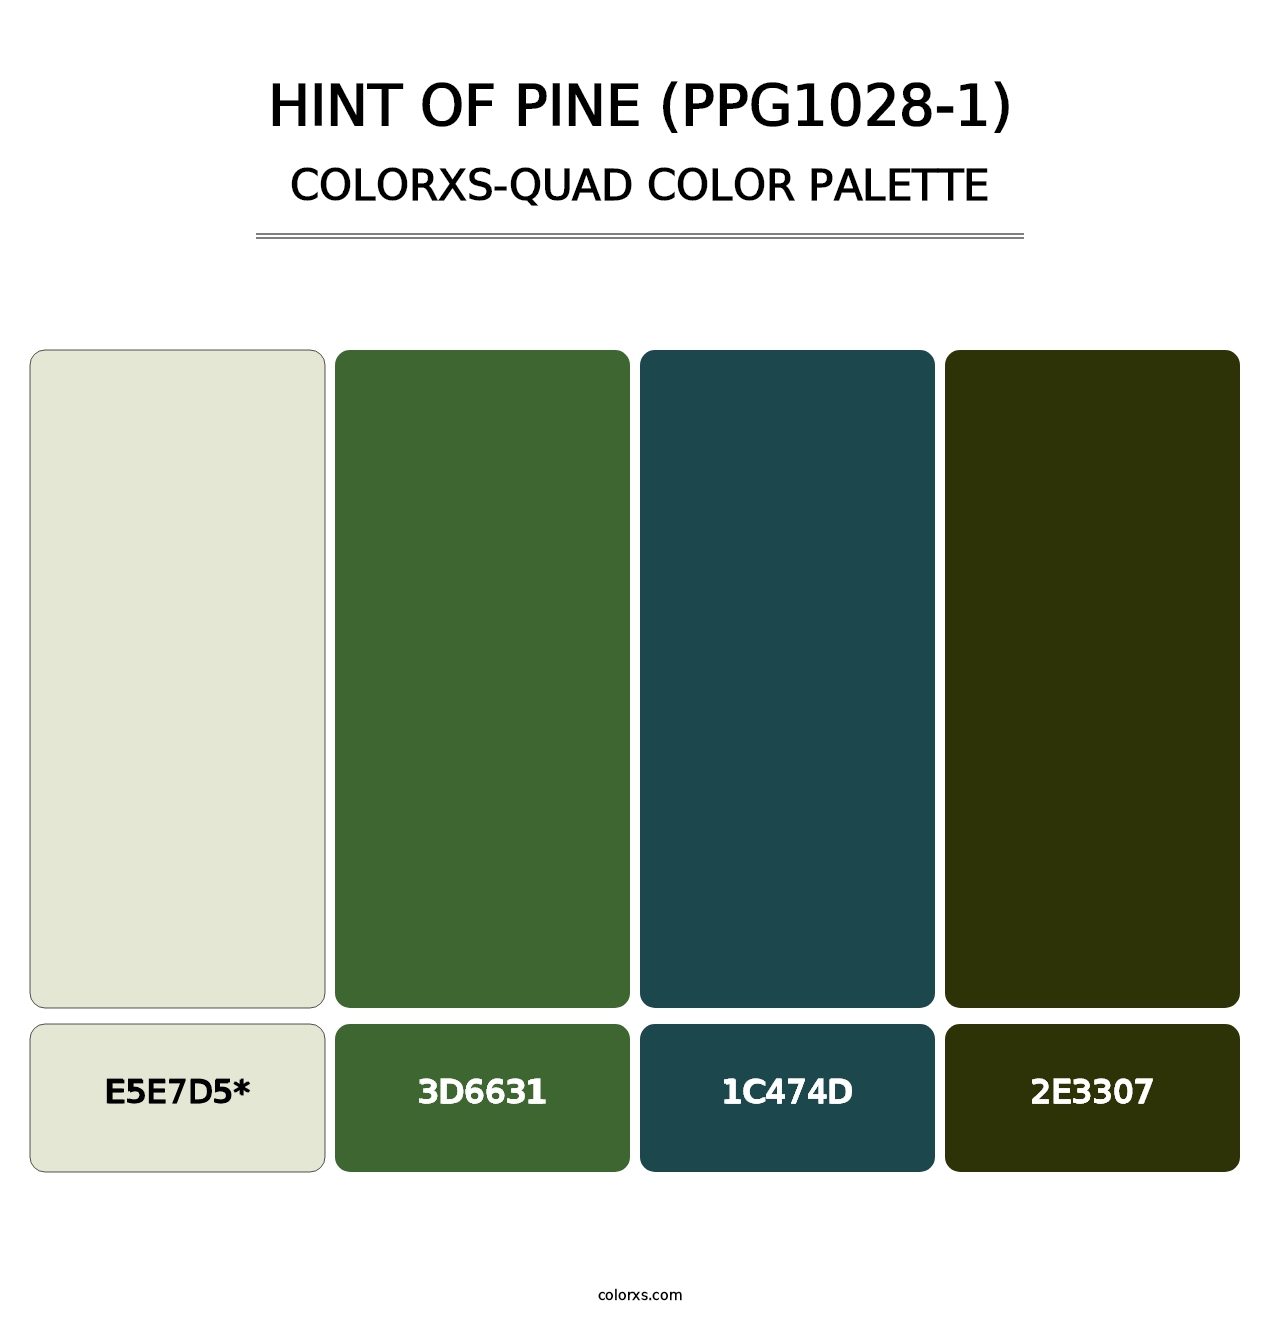 Hint Of Pine (PPG1028-1) - Colorxs Quad Palette